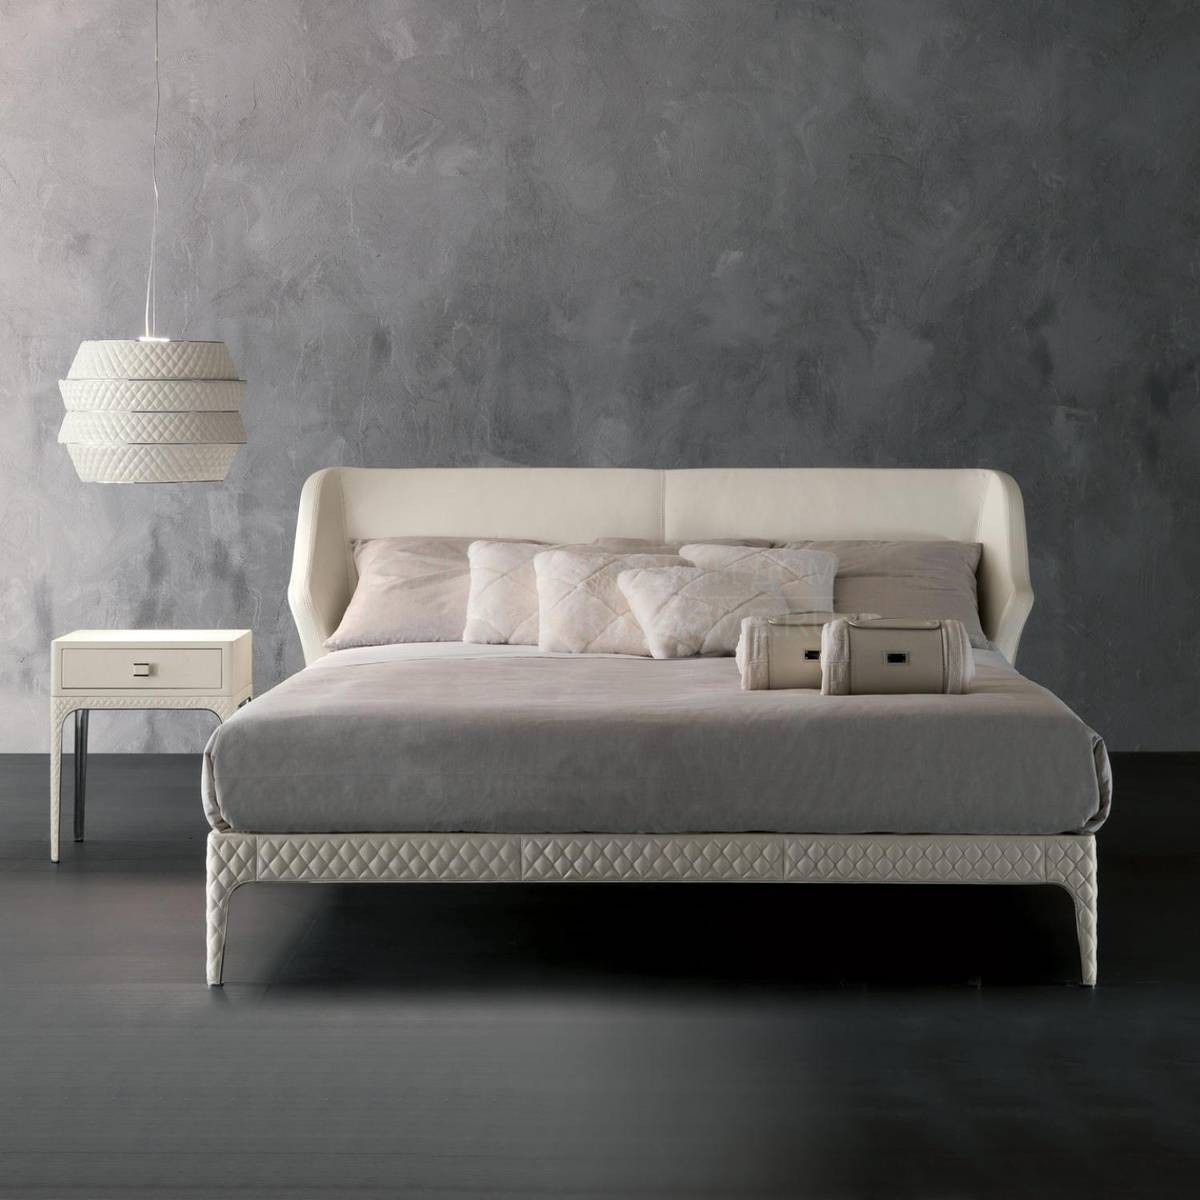 Кровать с мягким изголовьем Cupido/W04 из Италии фабрики RUGIANO